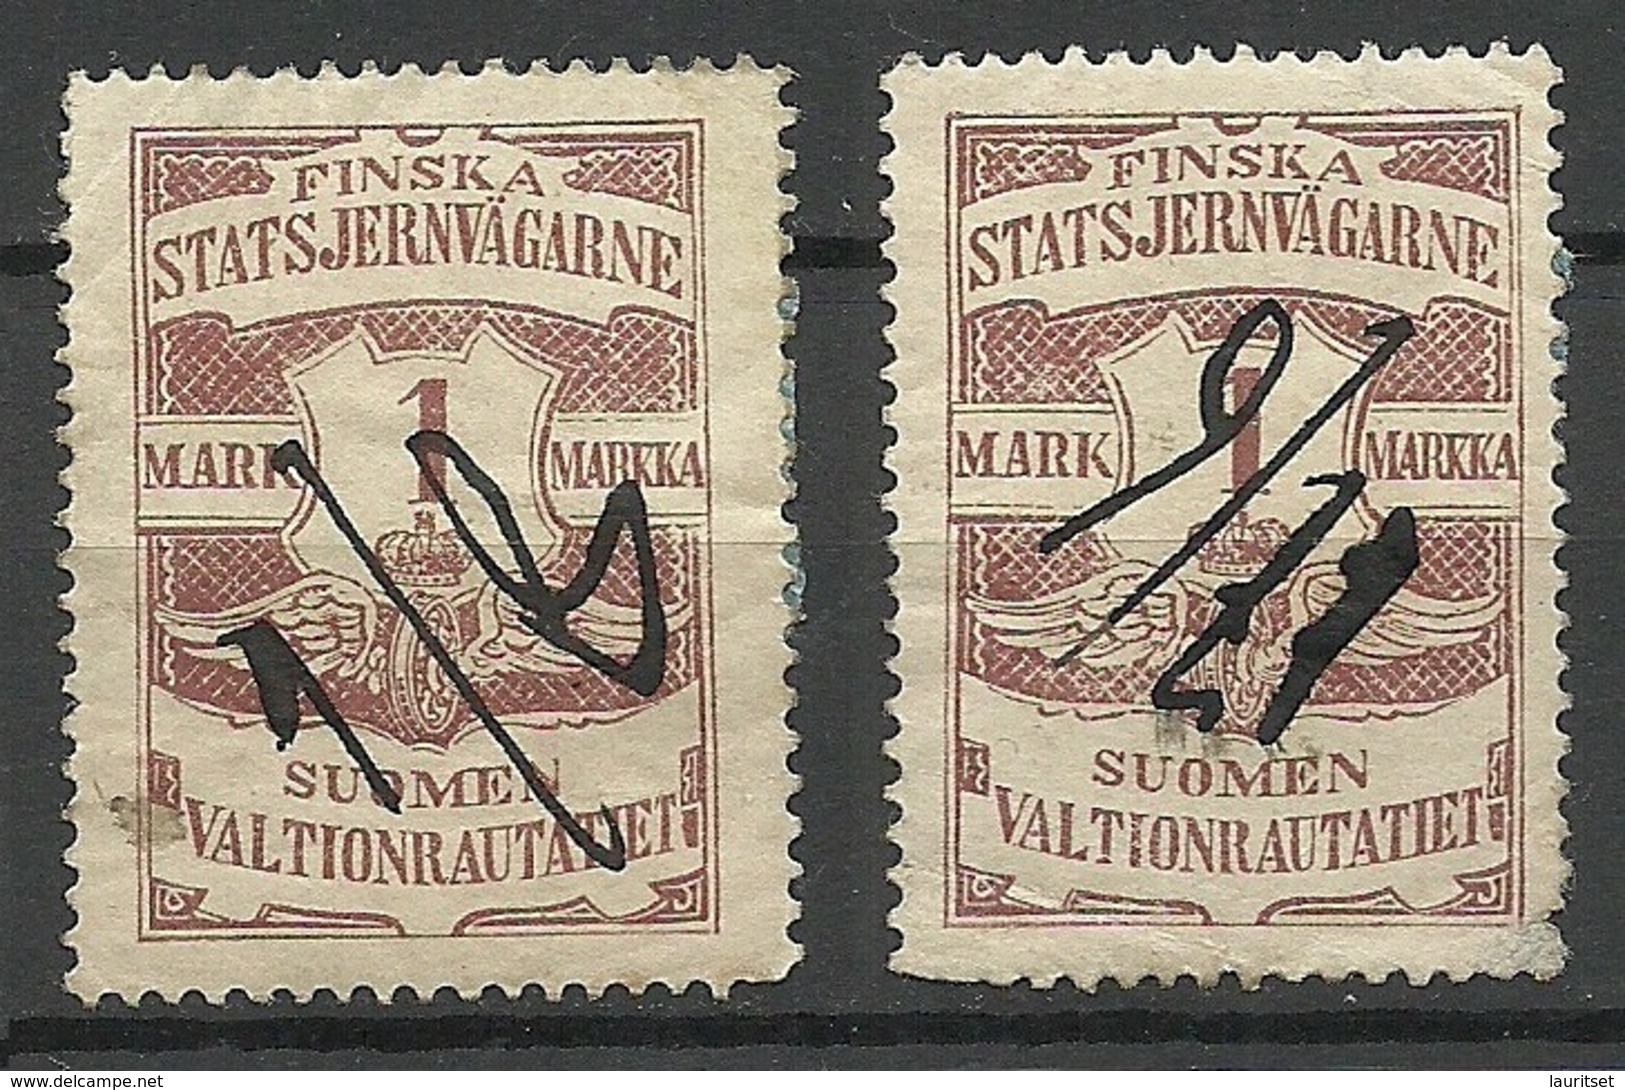 FINLAND FINNLAND 1903 Railway Stamp, 2 Exemplares, O - Postpaketten